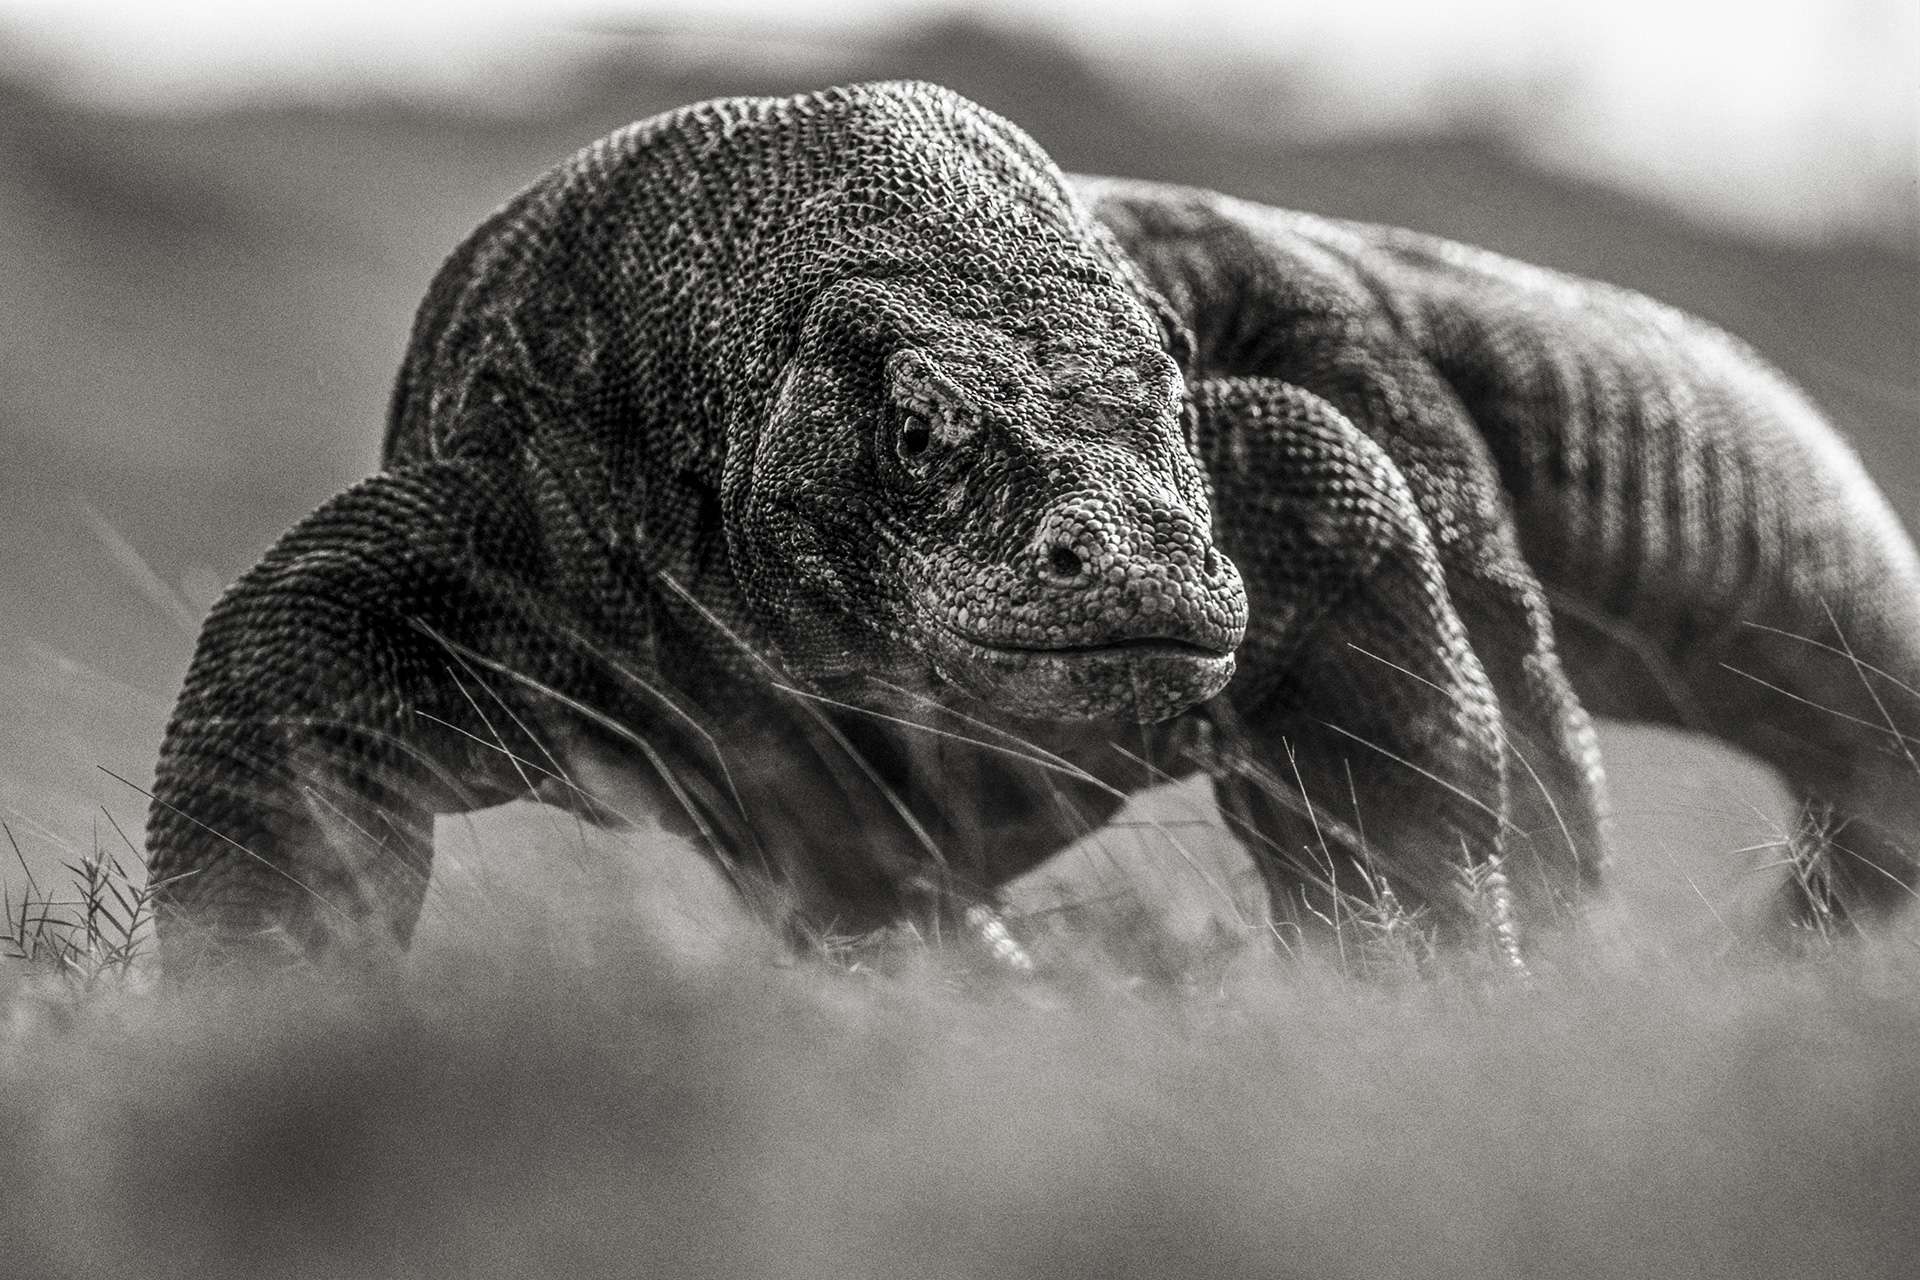 Photographie de Gilles Martin : varan de Komodo, Struggle for life